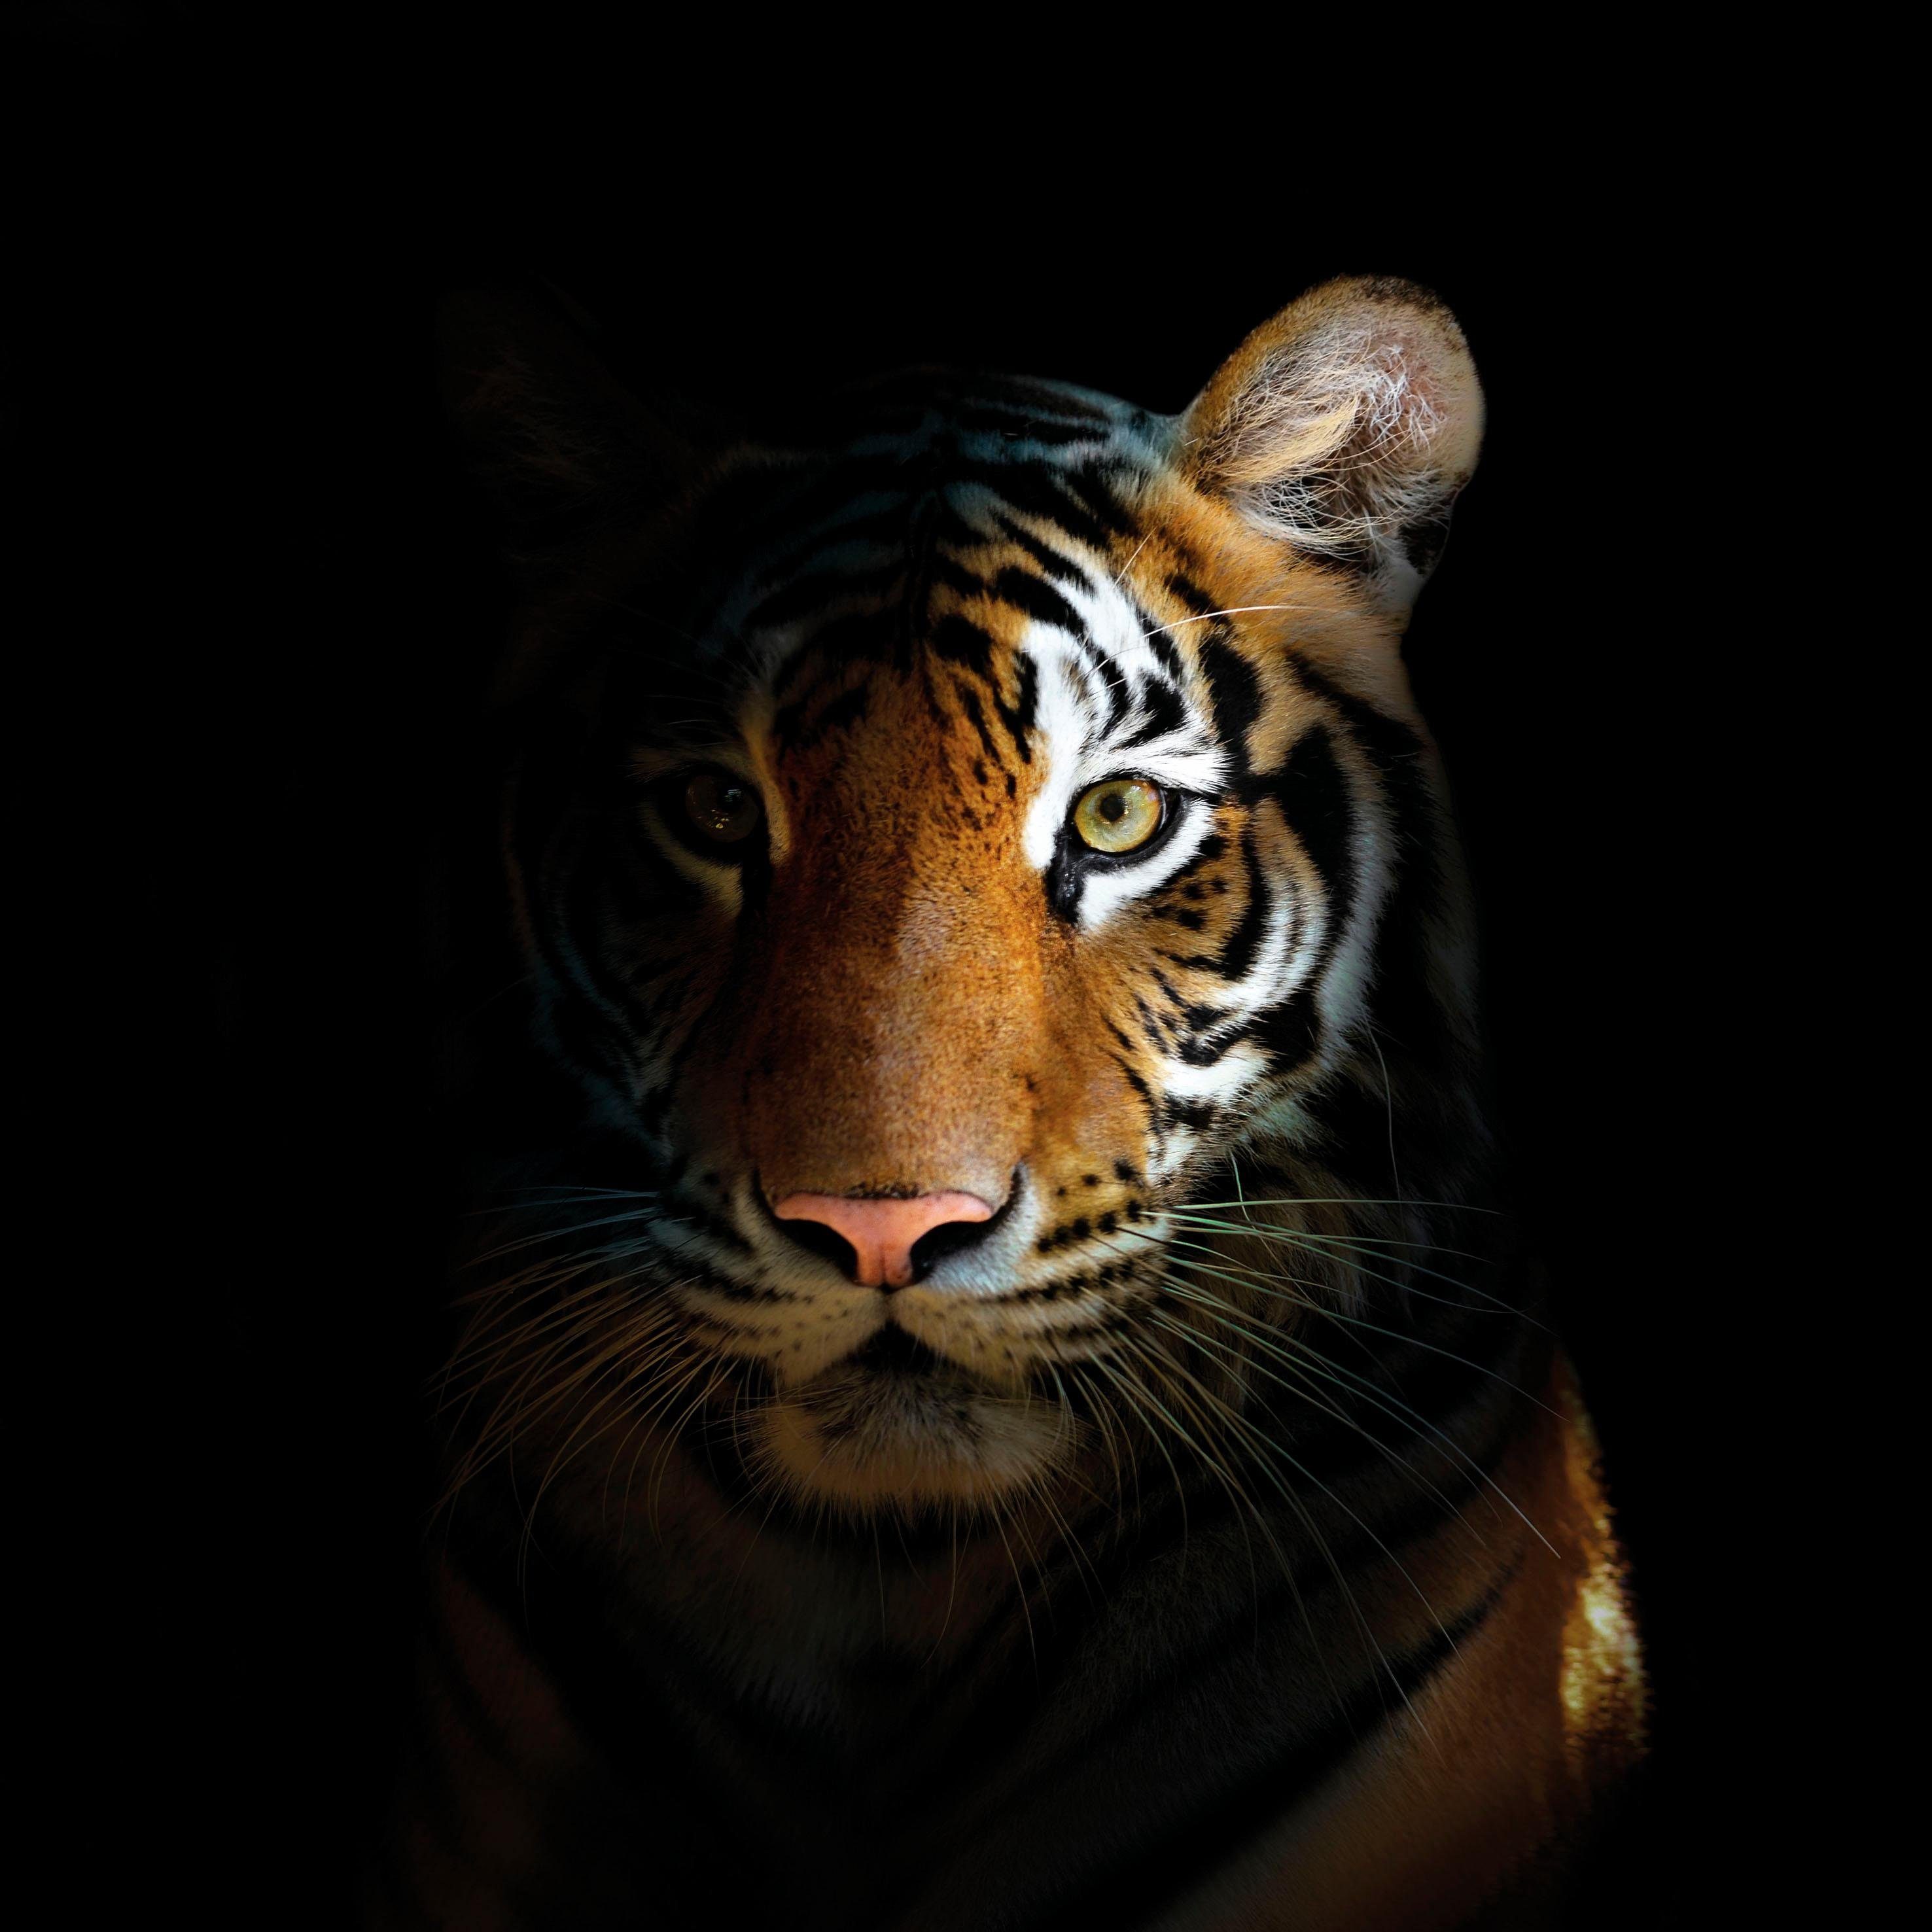 かっこいい虎の高画質画像な壁紙まとめ 強そうな姿にホレボレ 写真まとめサイト Pictas